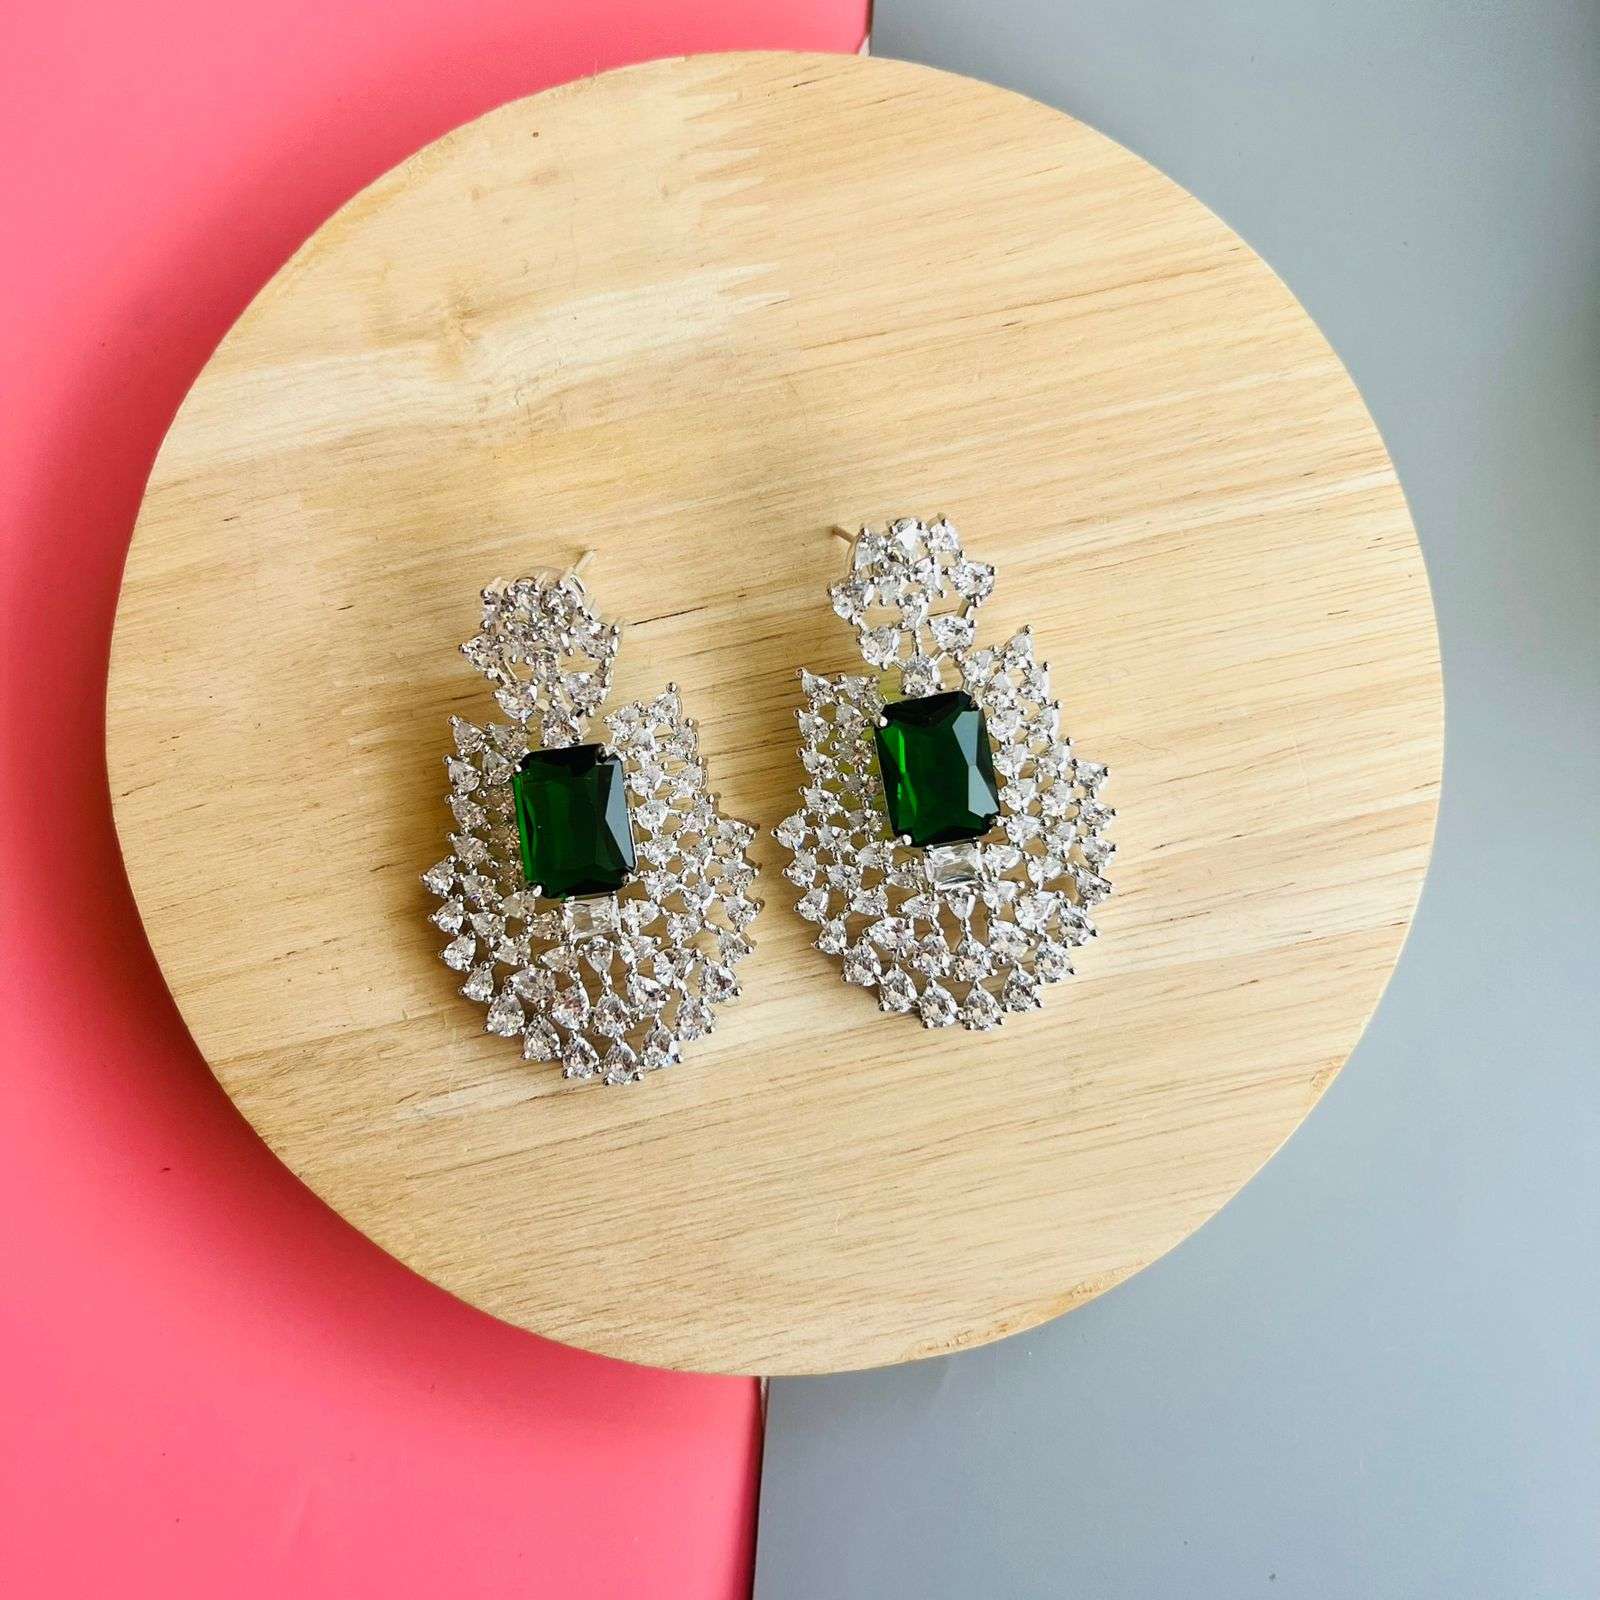 Ad Opal earrings